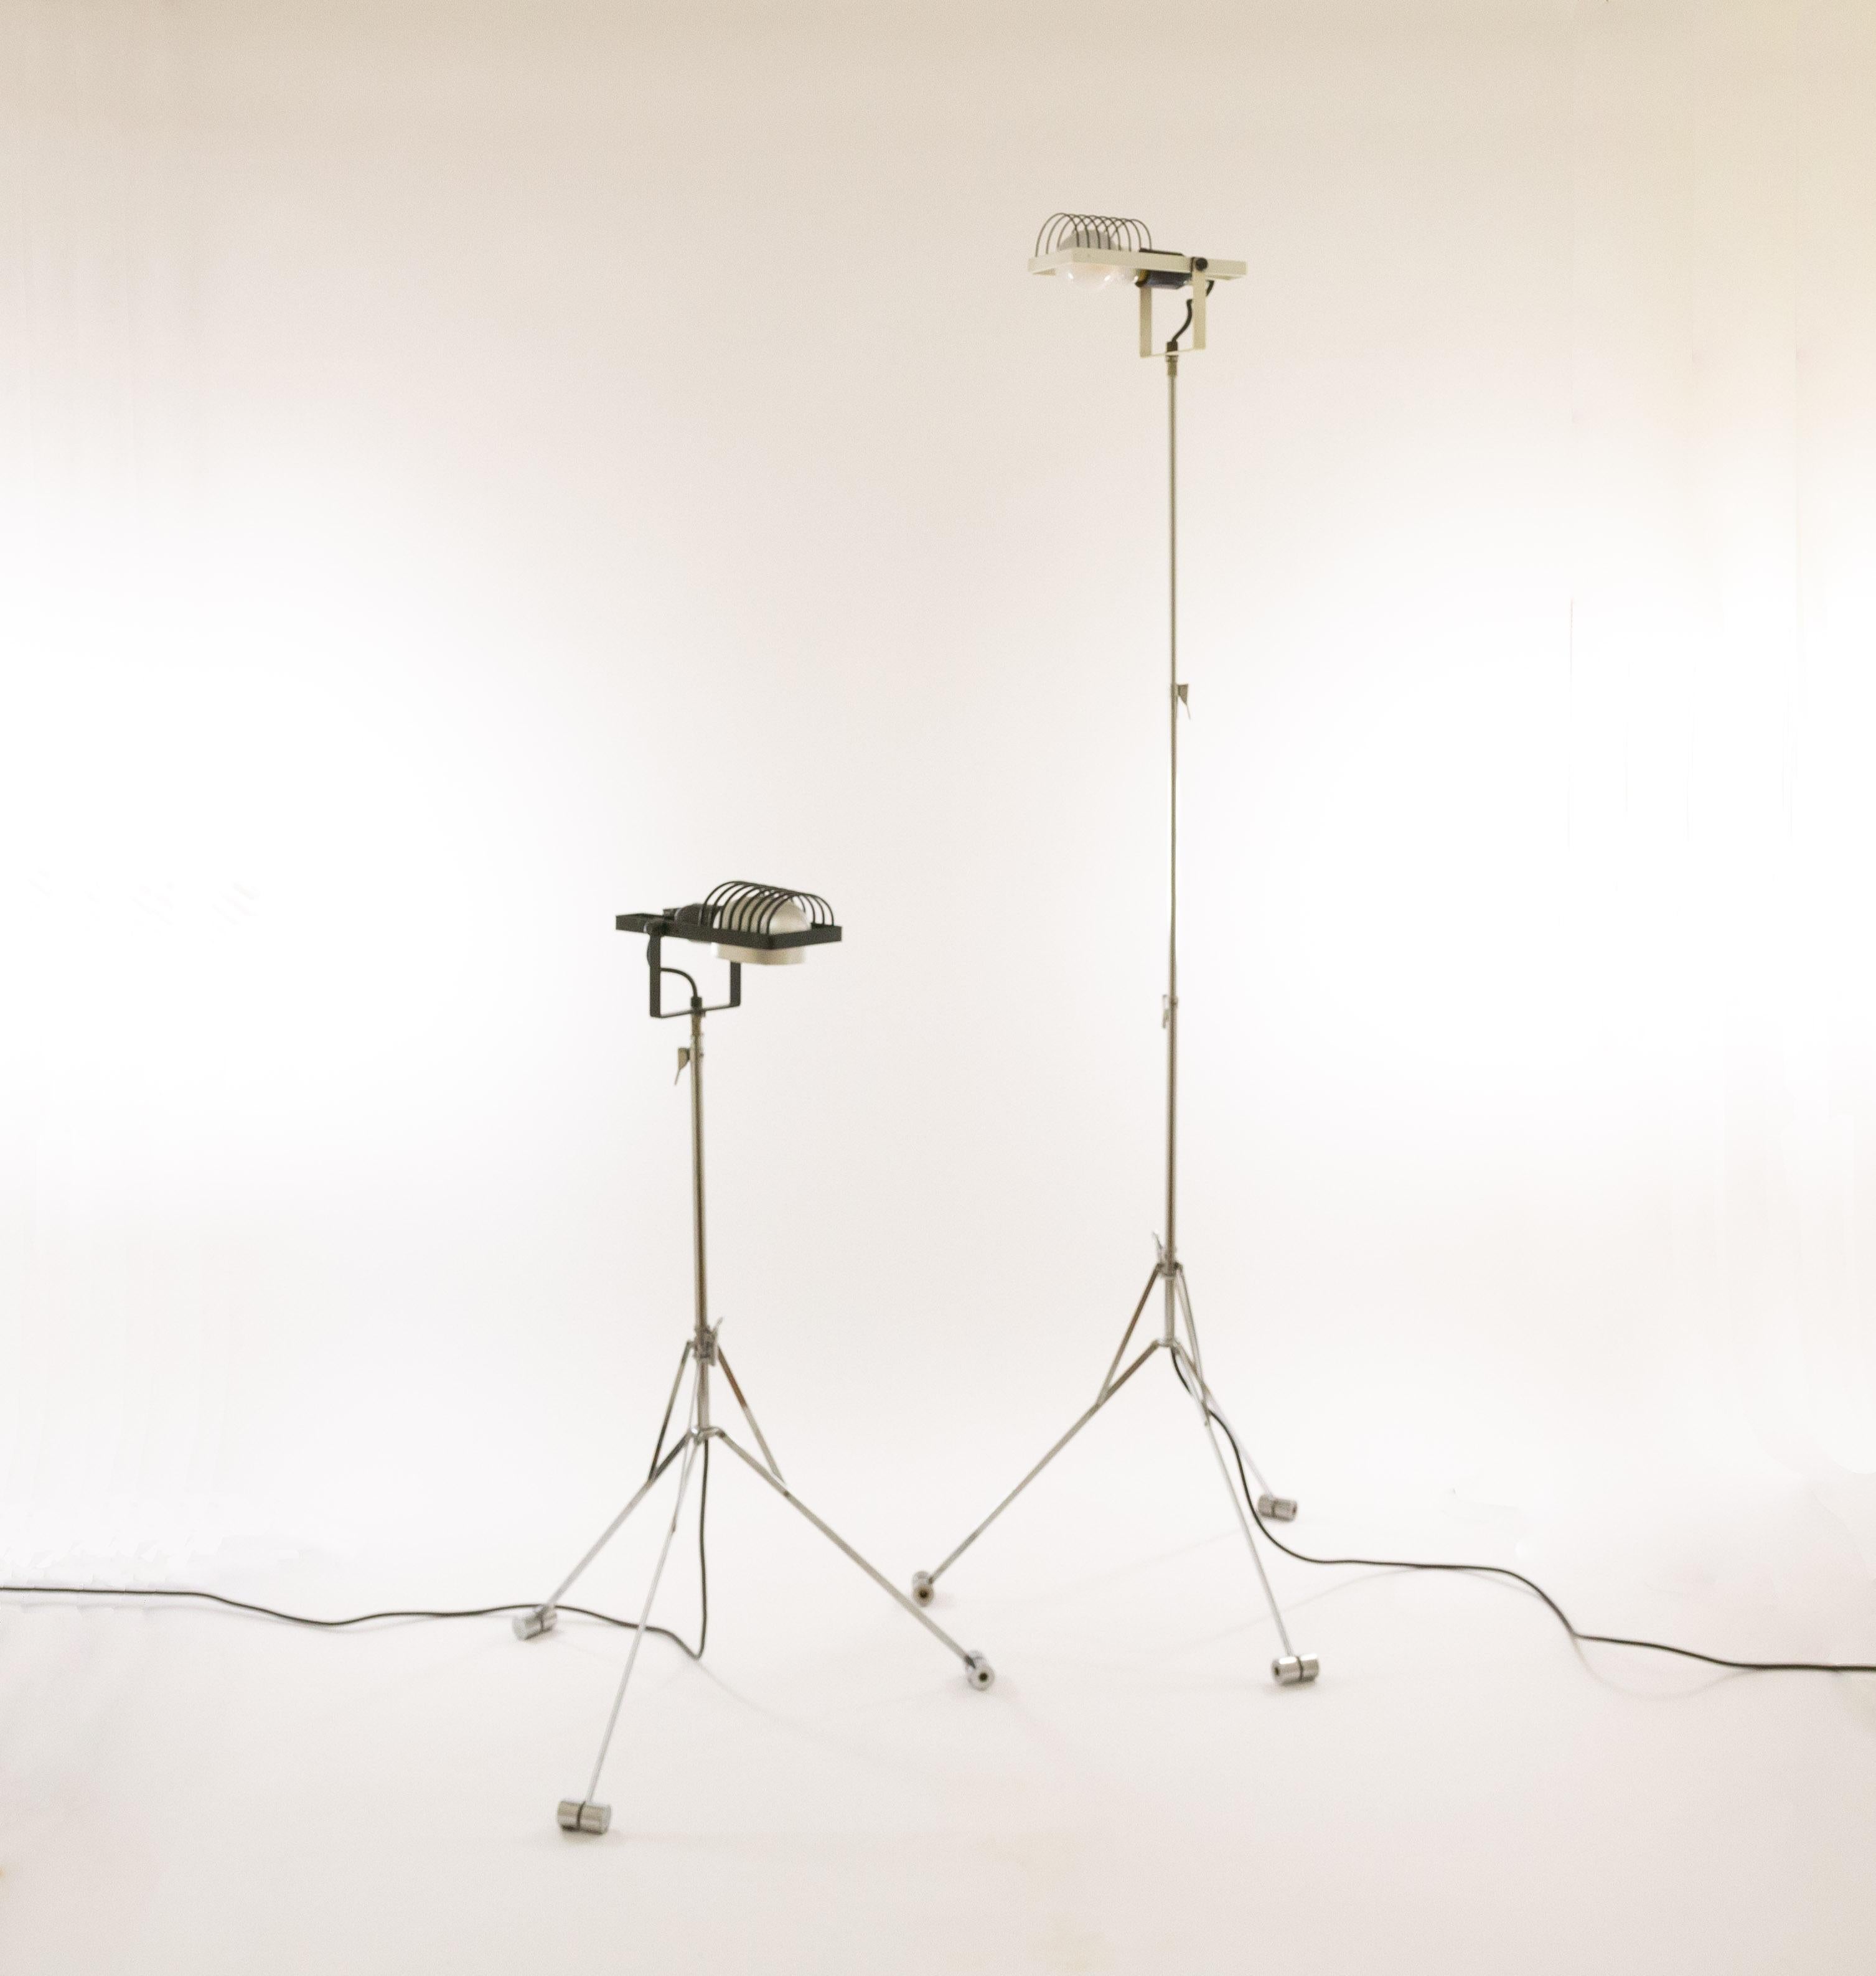 Ein Paar Sintesi-Stehlampen, entworfen von Ernesto Gismondi für das italienische Beleuchtungsunternehmen Artemide im Jahr 1975.

Wie alle Modelle der Sintesi-Serie sind auch diese Stehleuchten flexibel. Der Aluminiumschirm ist vollständig